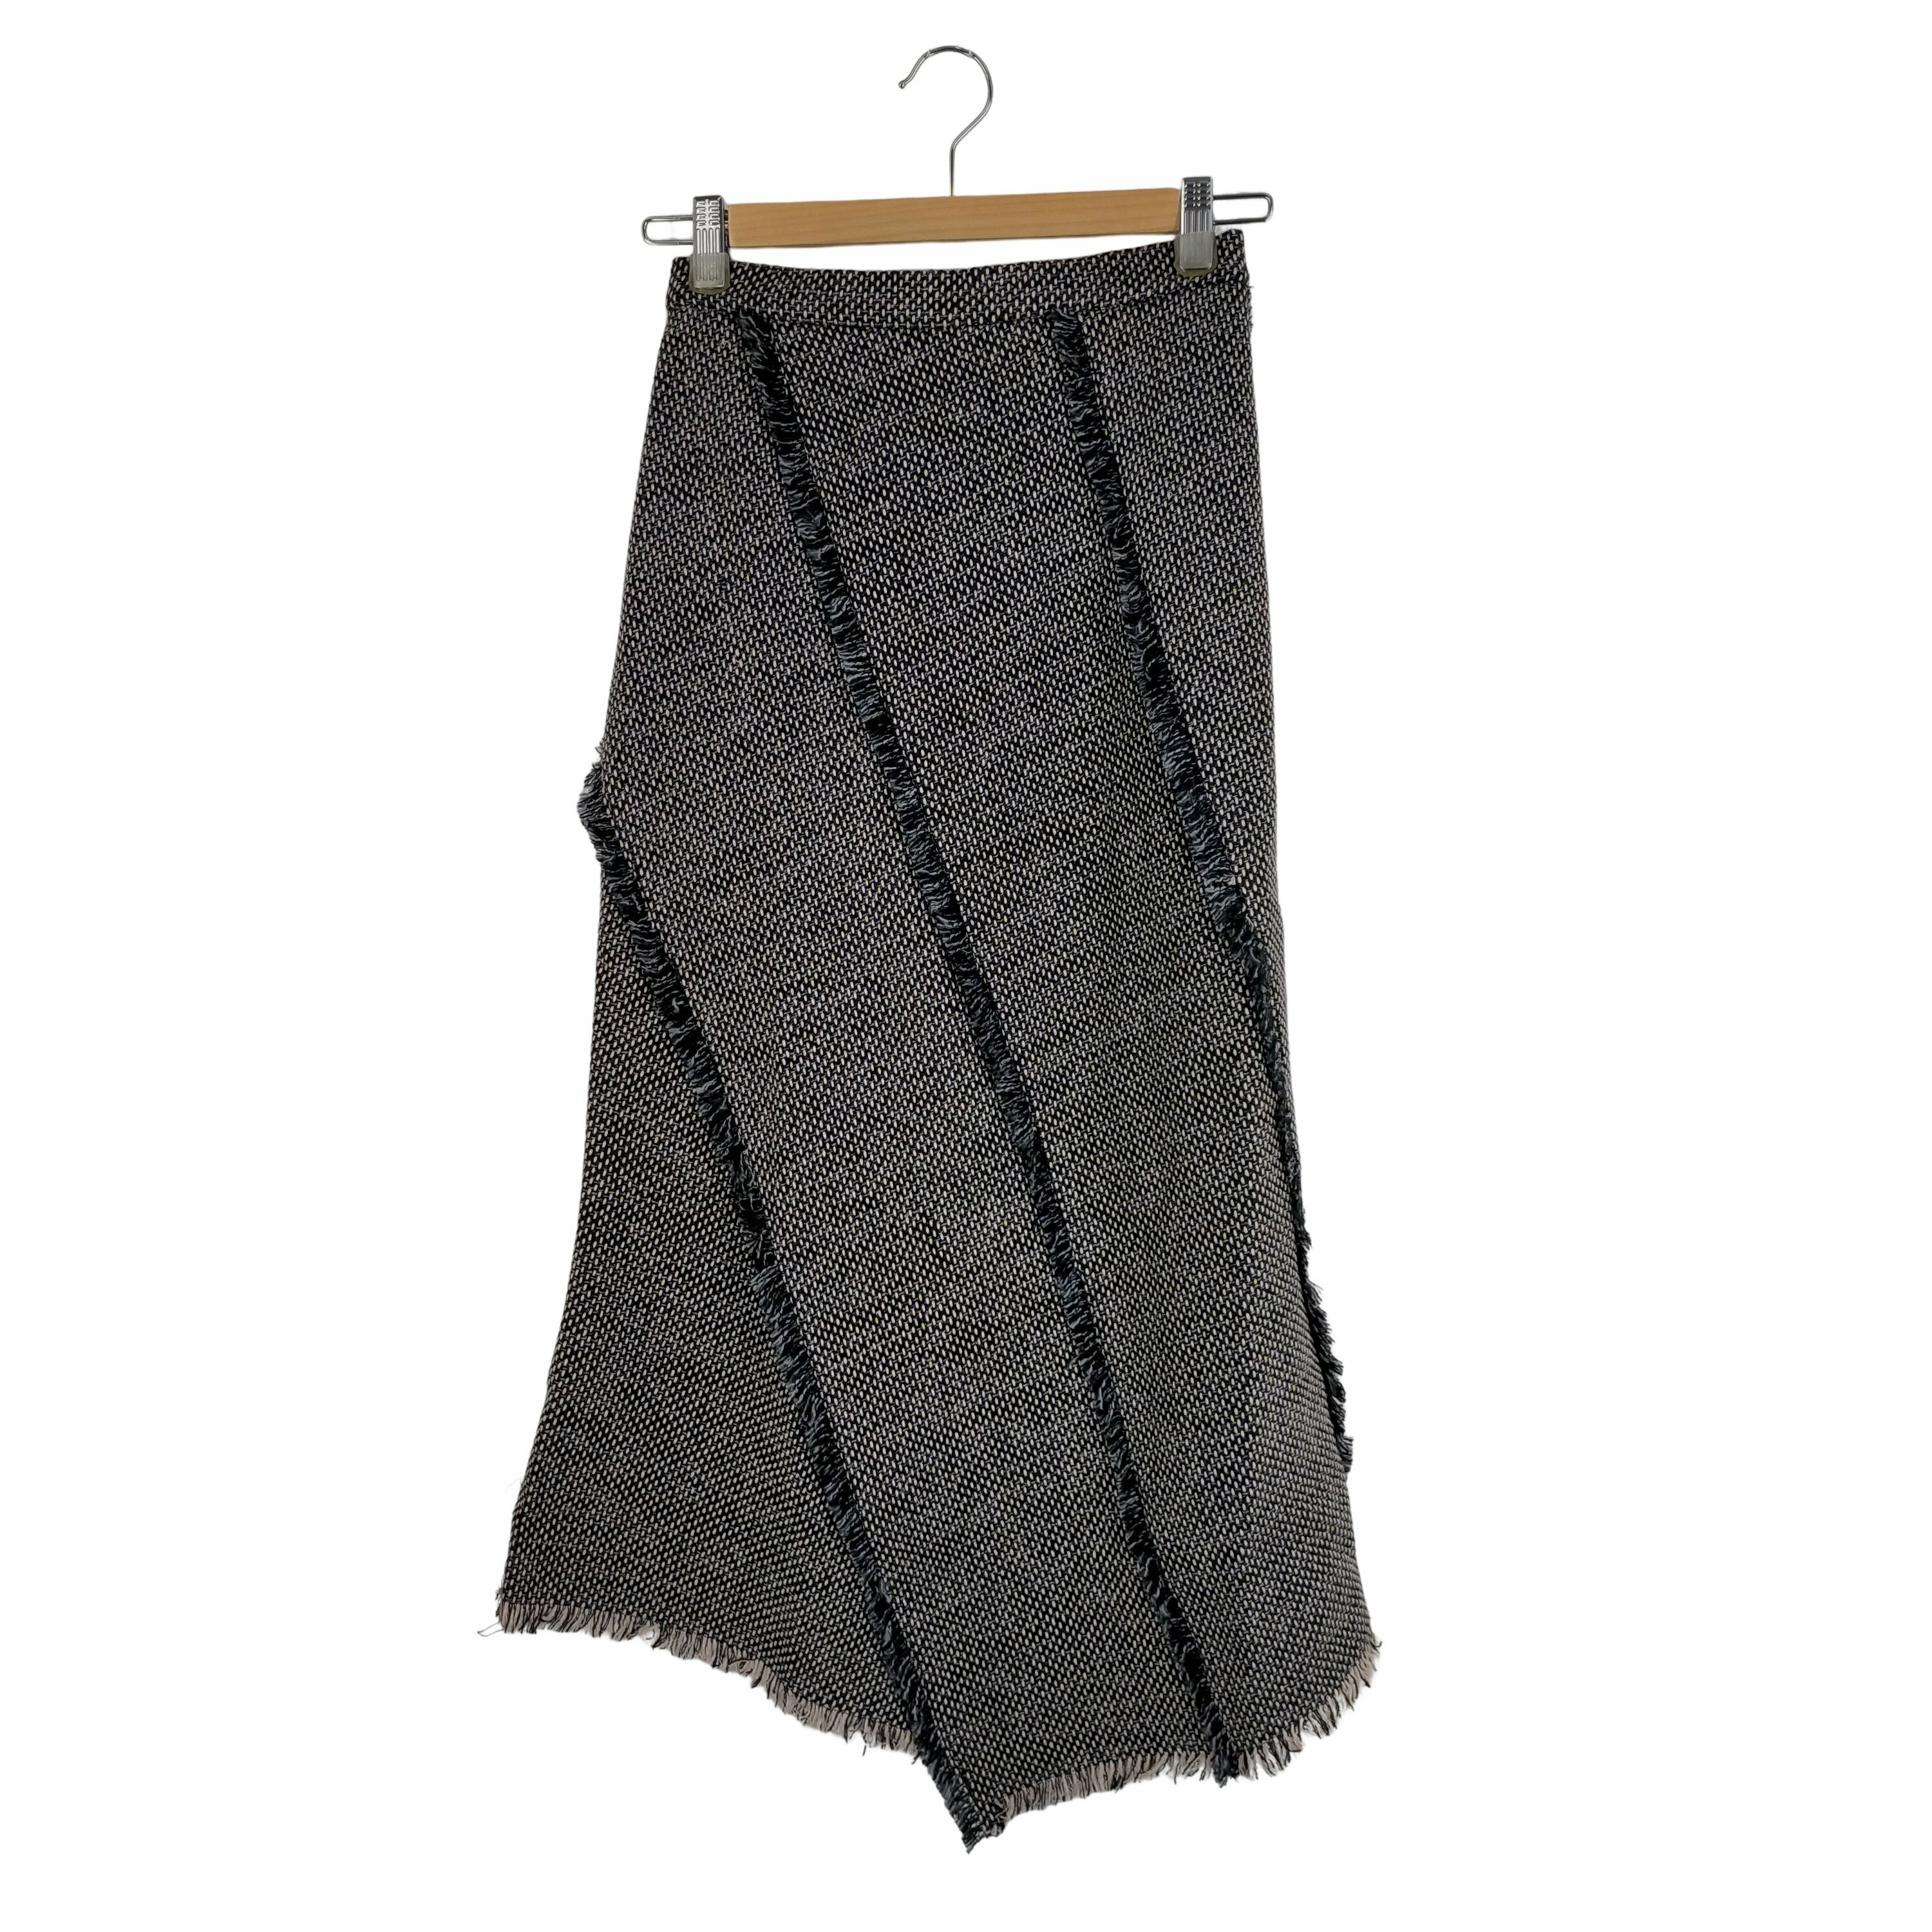 yÁz[YhtM USEDÒ {{L'Or}}Spiral Tweed Skirt fB[X S